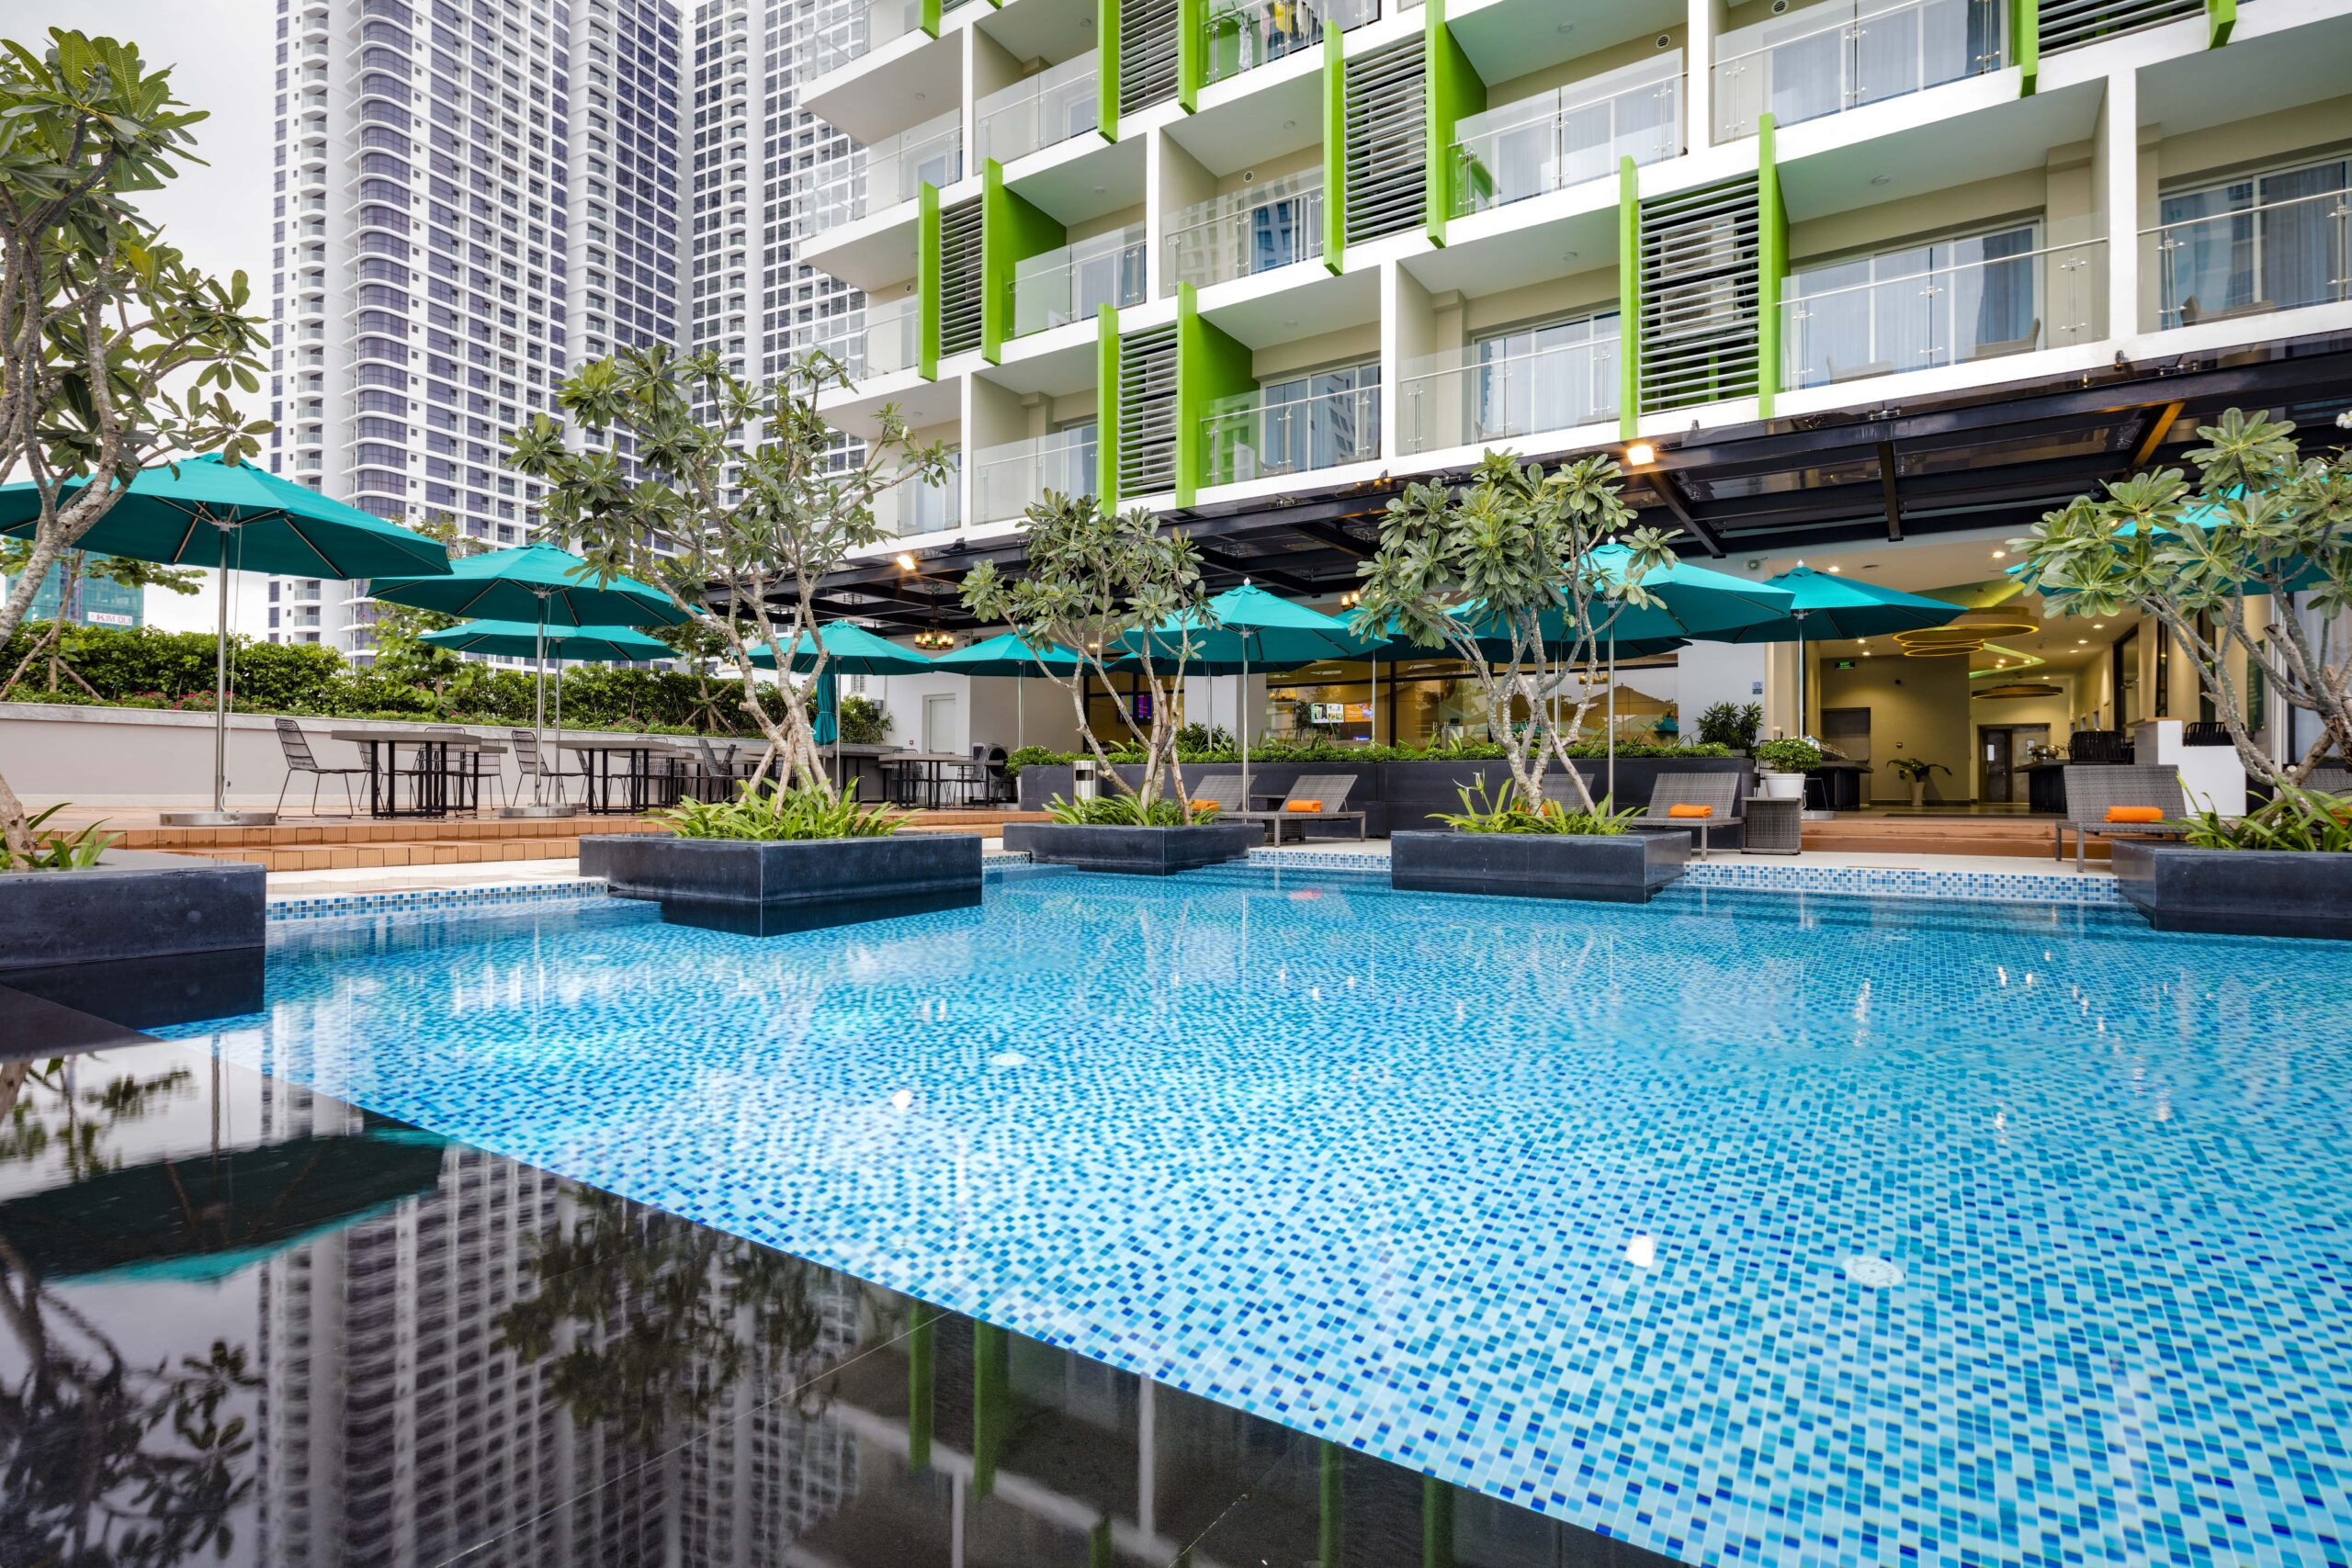 Ariyana là mô hình khách sạn căn hộ đạt chuẩn 5 sao đầu tiên ở Nha Trang